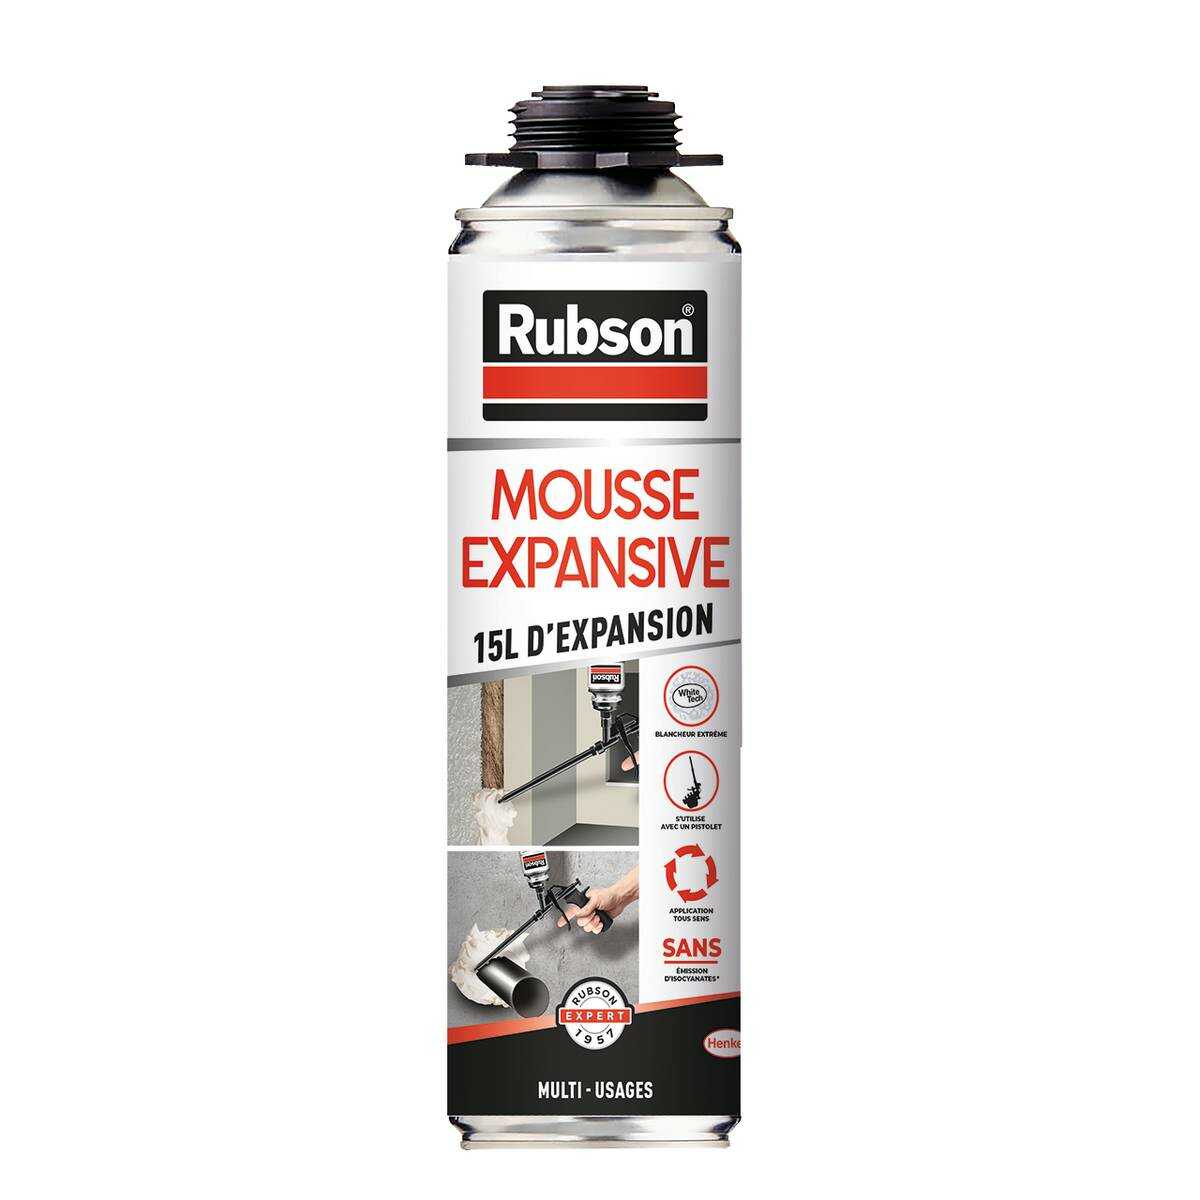 RUBSON Mousse Expansive Pistolable Multi-Usages 15L